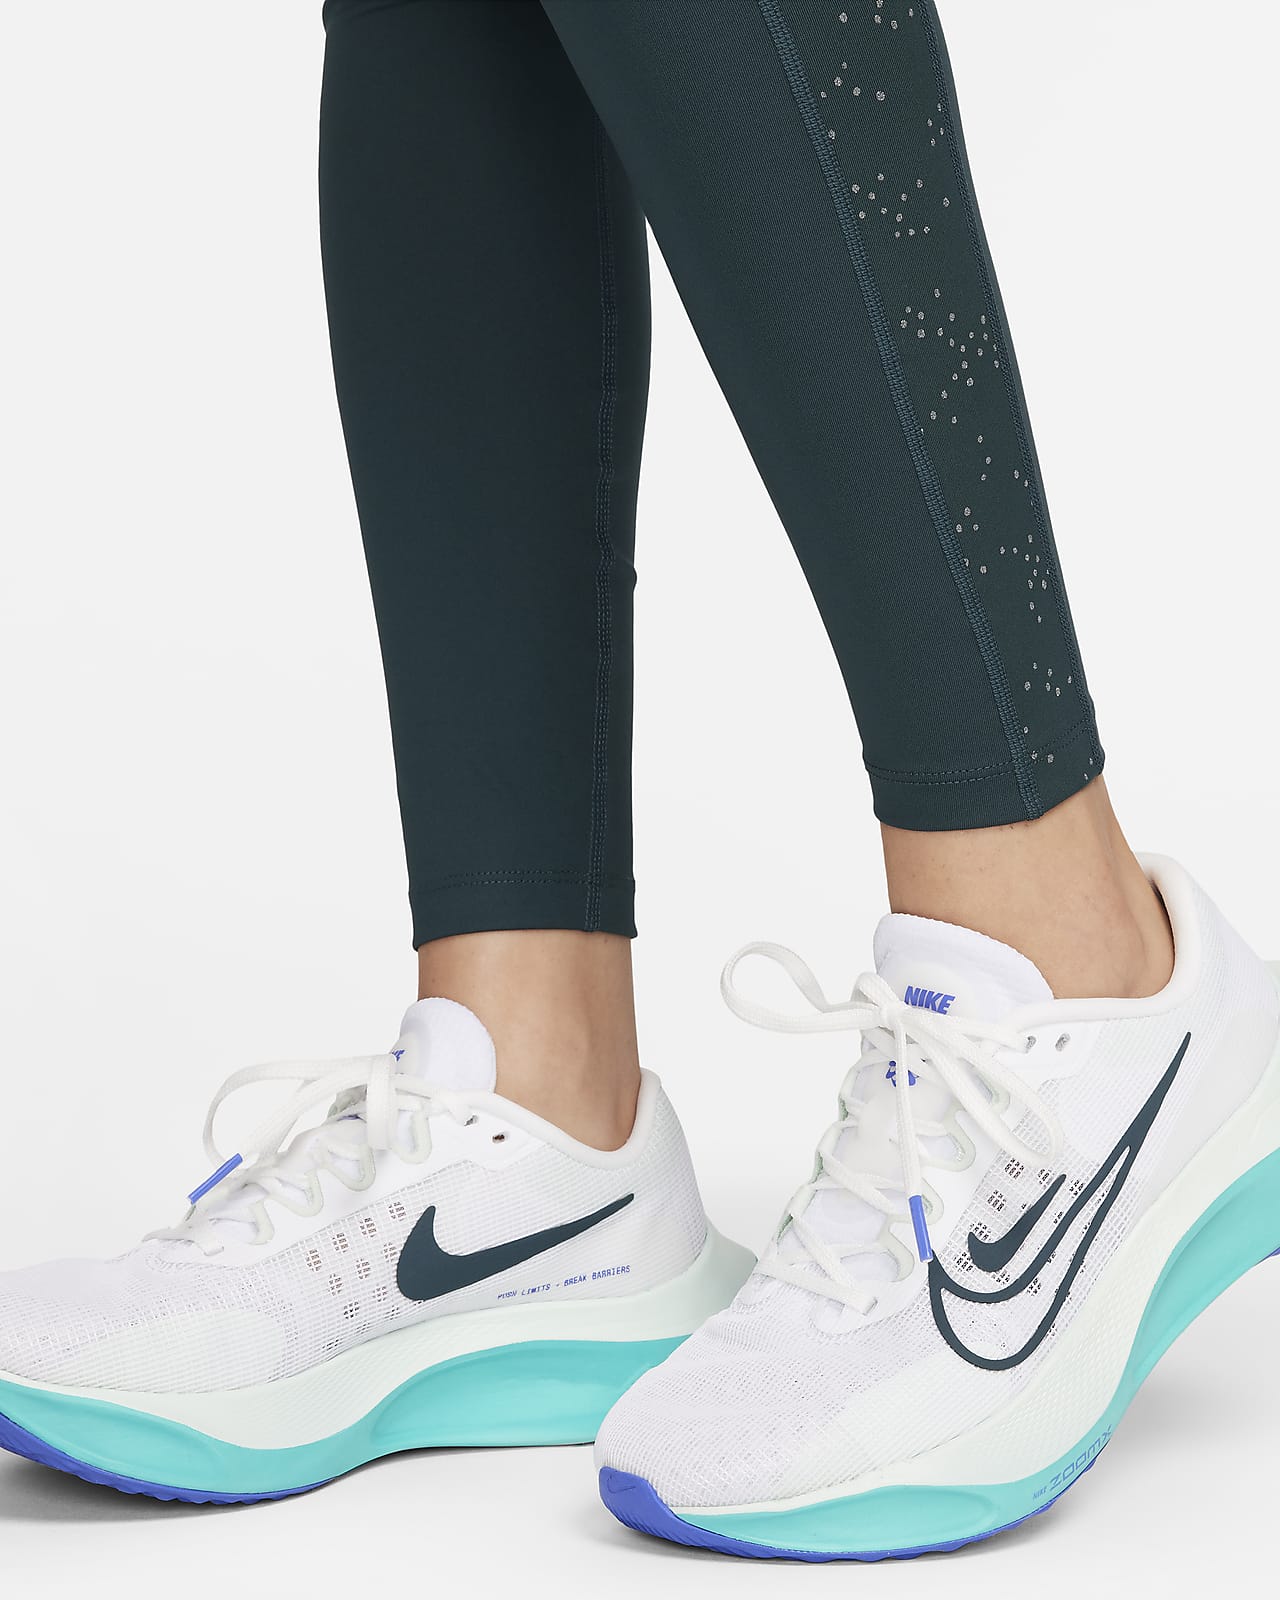 Nike Running Power Essential Printed Leggings Top Sellers